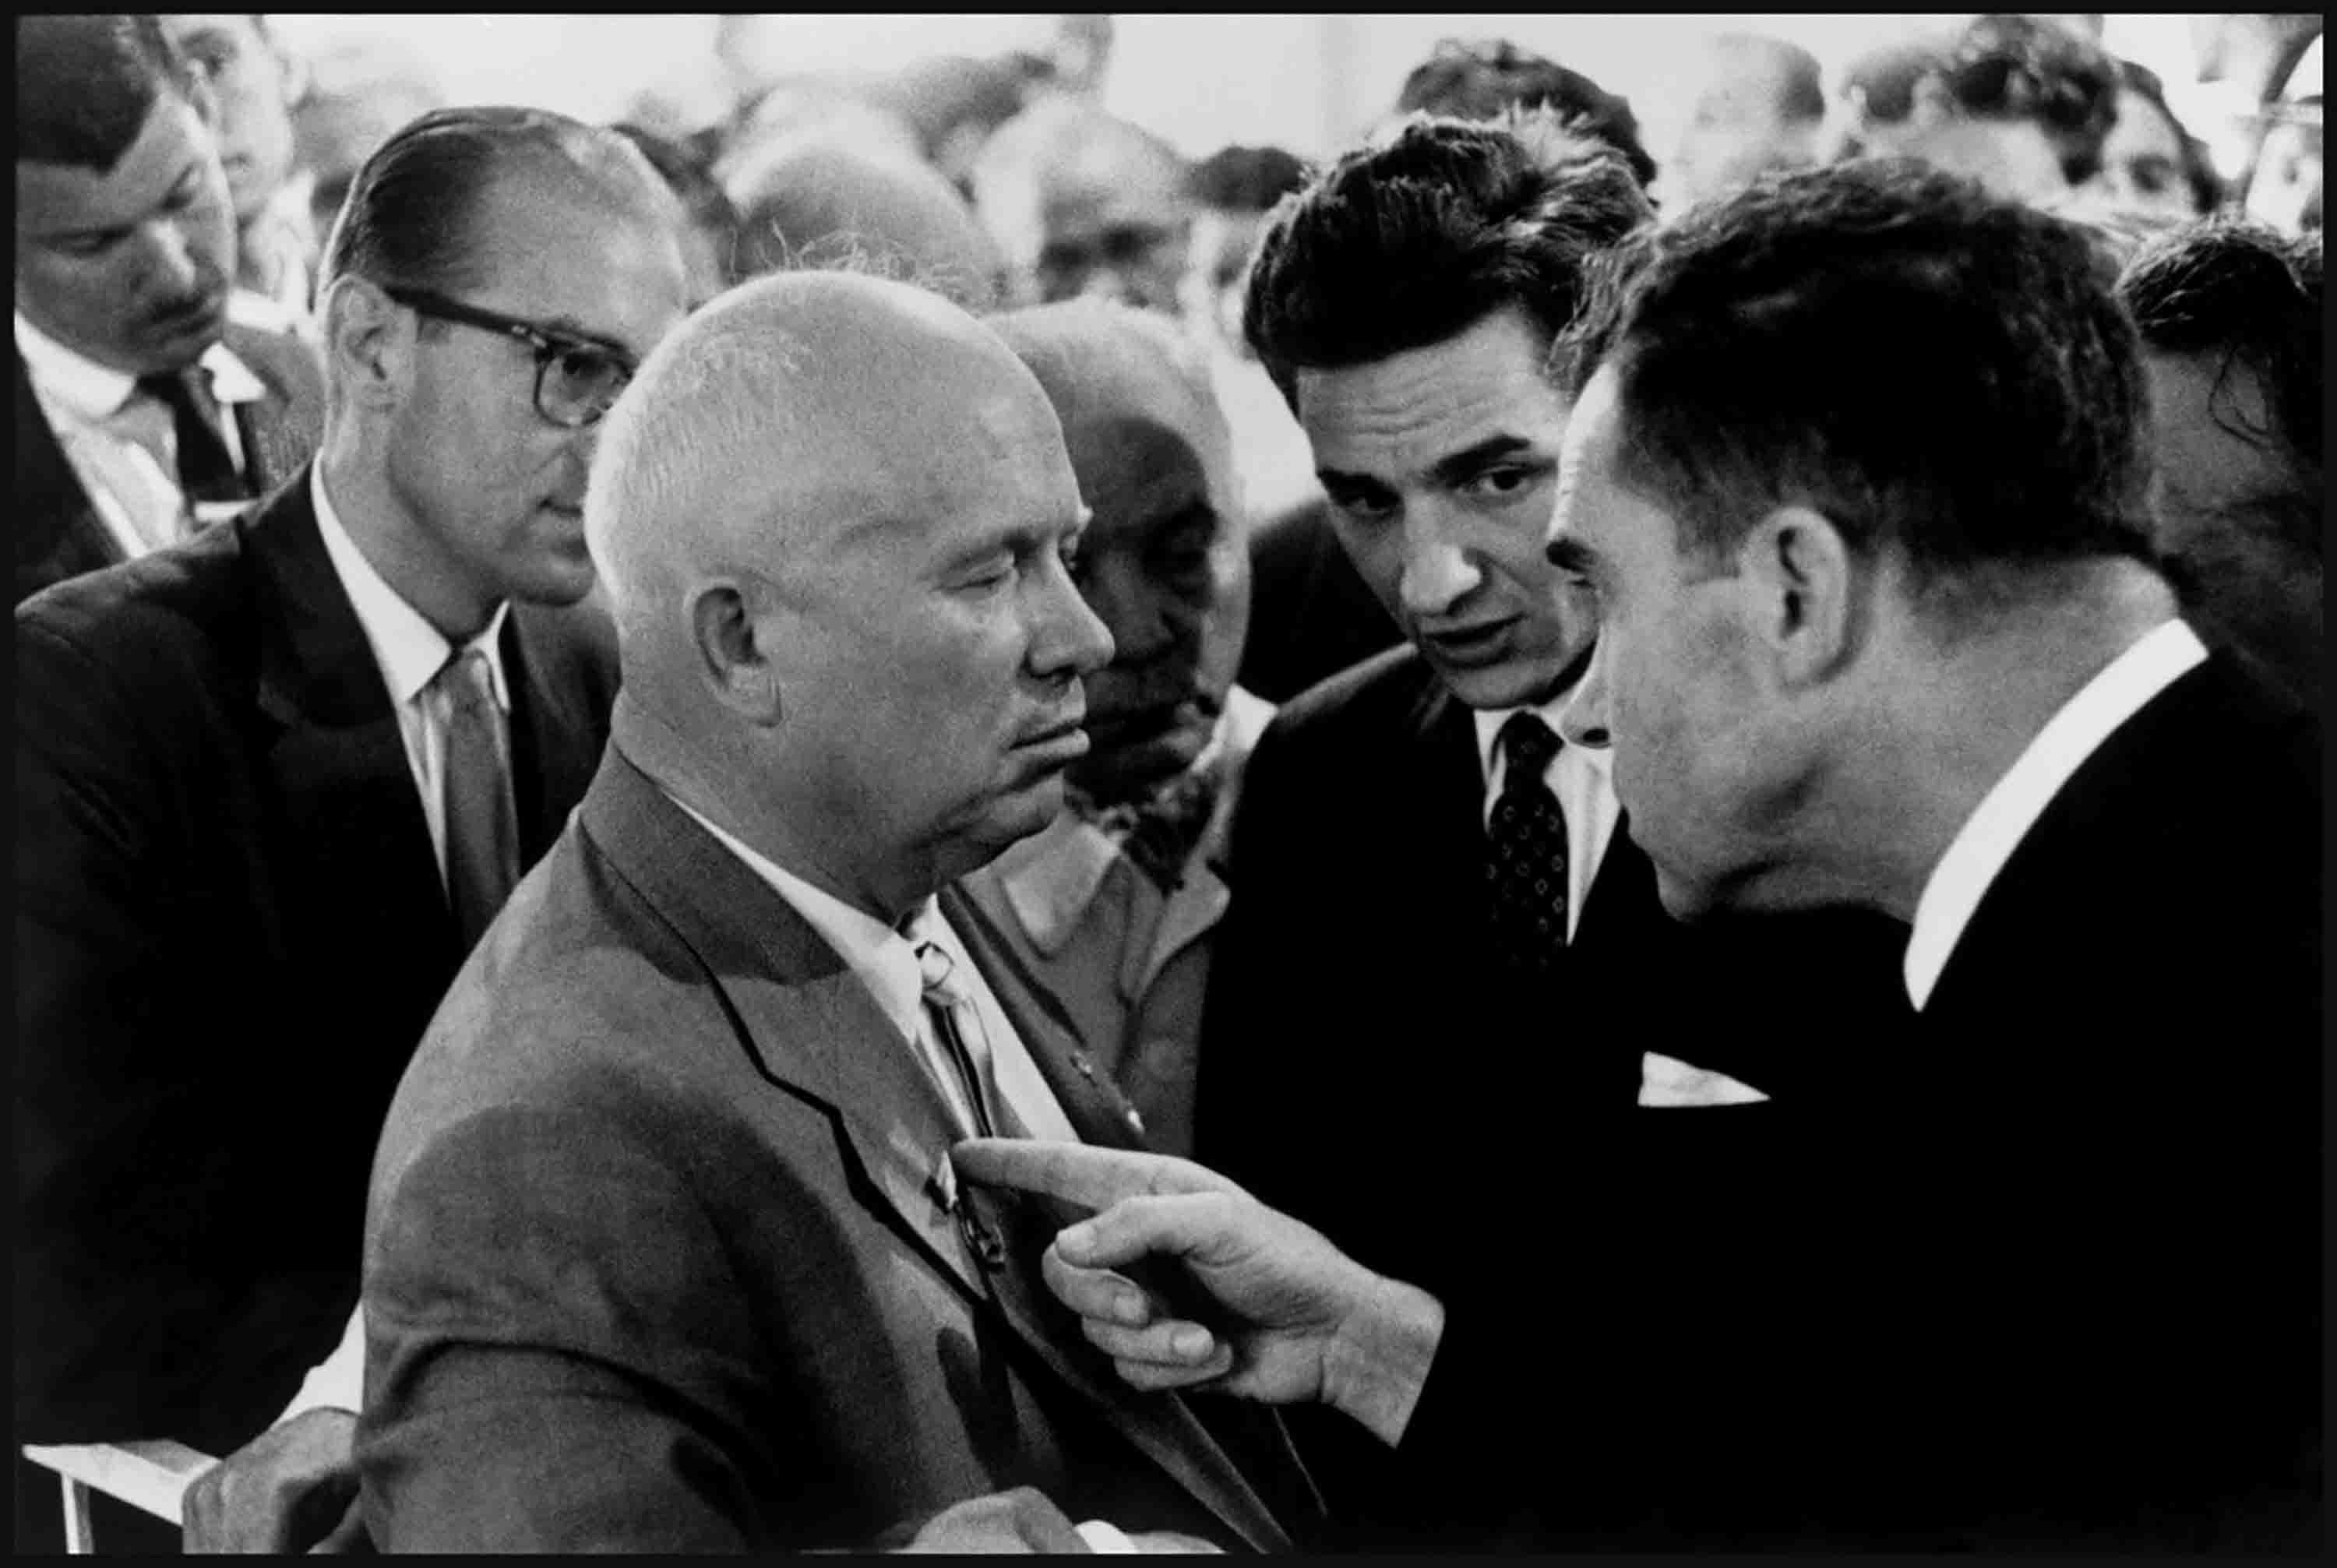 Nikita Chruschtschow und Richard Nixon, Moskau, 1959  - Elliott Erwitt (Schwarz-Weiß-Fotografie)
Signiert, mit Titel bezeichnet und datiert auf dem beiliegenden Label des Künstlers
Silbergelatineabzug, später gedruckt

Erhältlich in vier Größen:
11